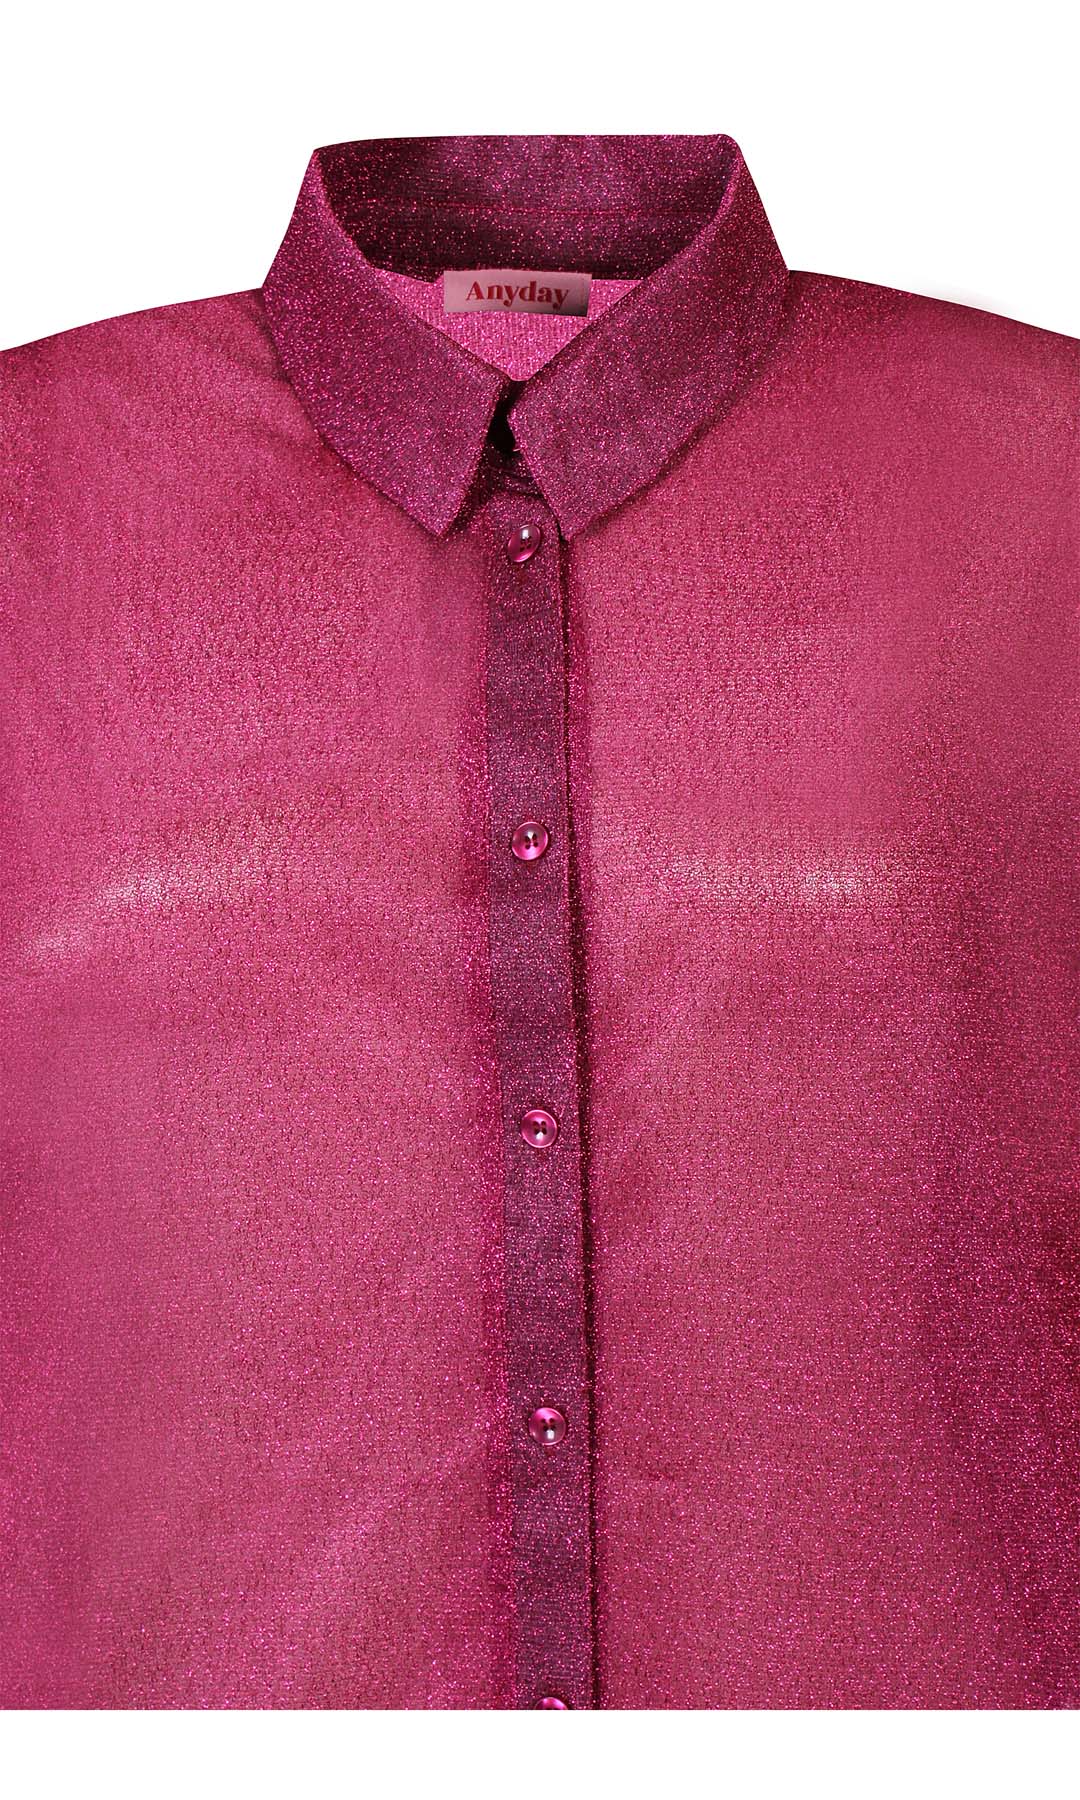 Liv 071 - Shirt - Pink